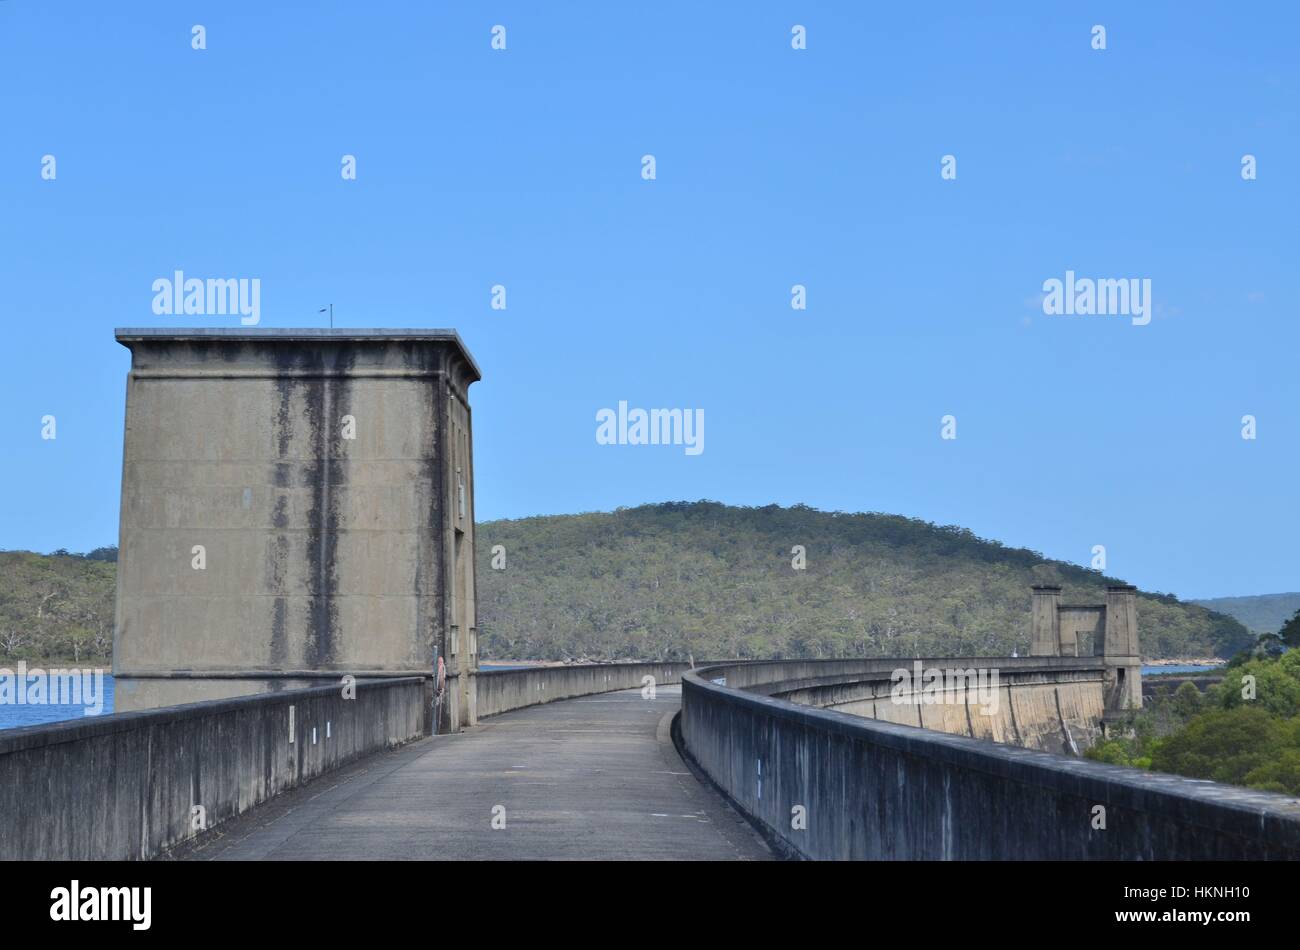 Panneaux mur de barrage en grès Banque D'Images